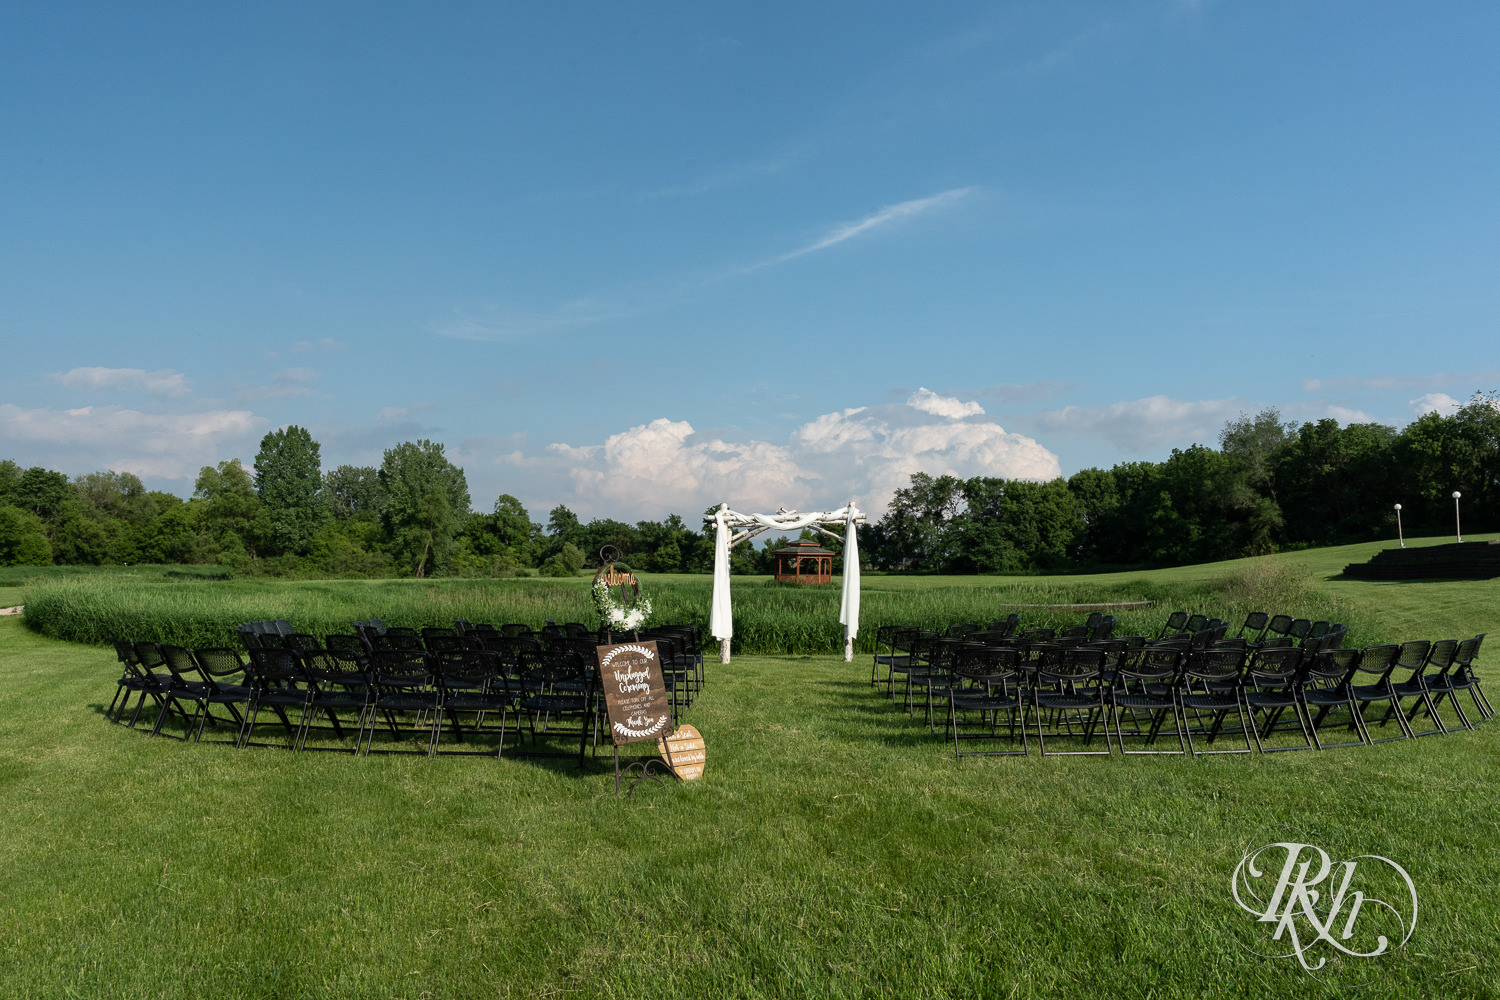 Outdoor summer wedding ceremony setup at Barn at Crocker's Creek in Faribault, Minnesota.